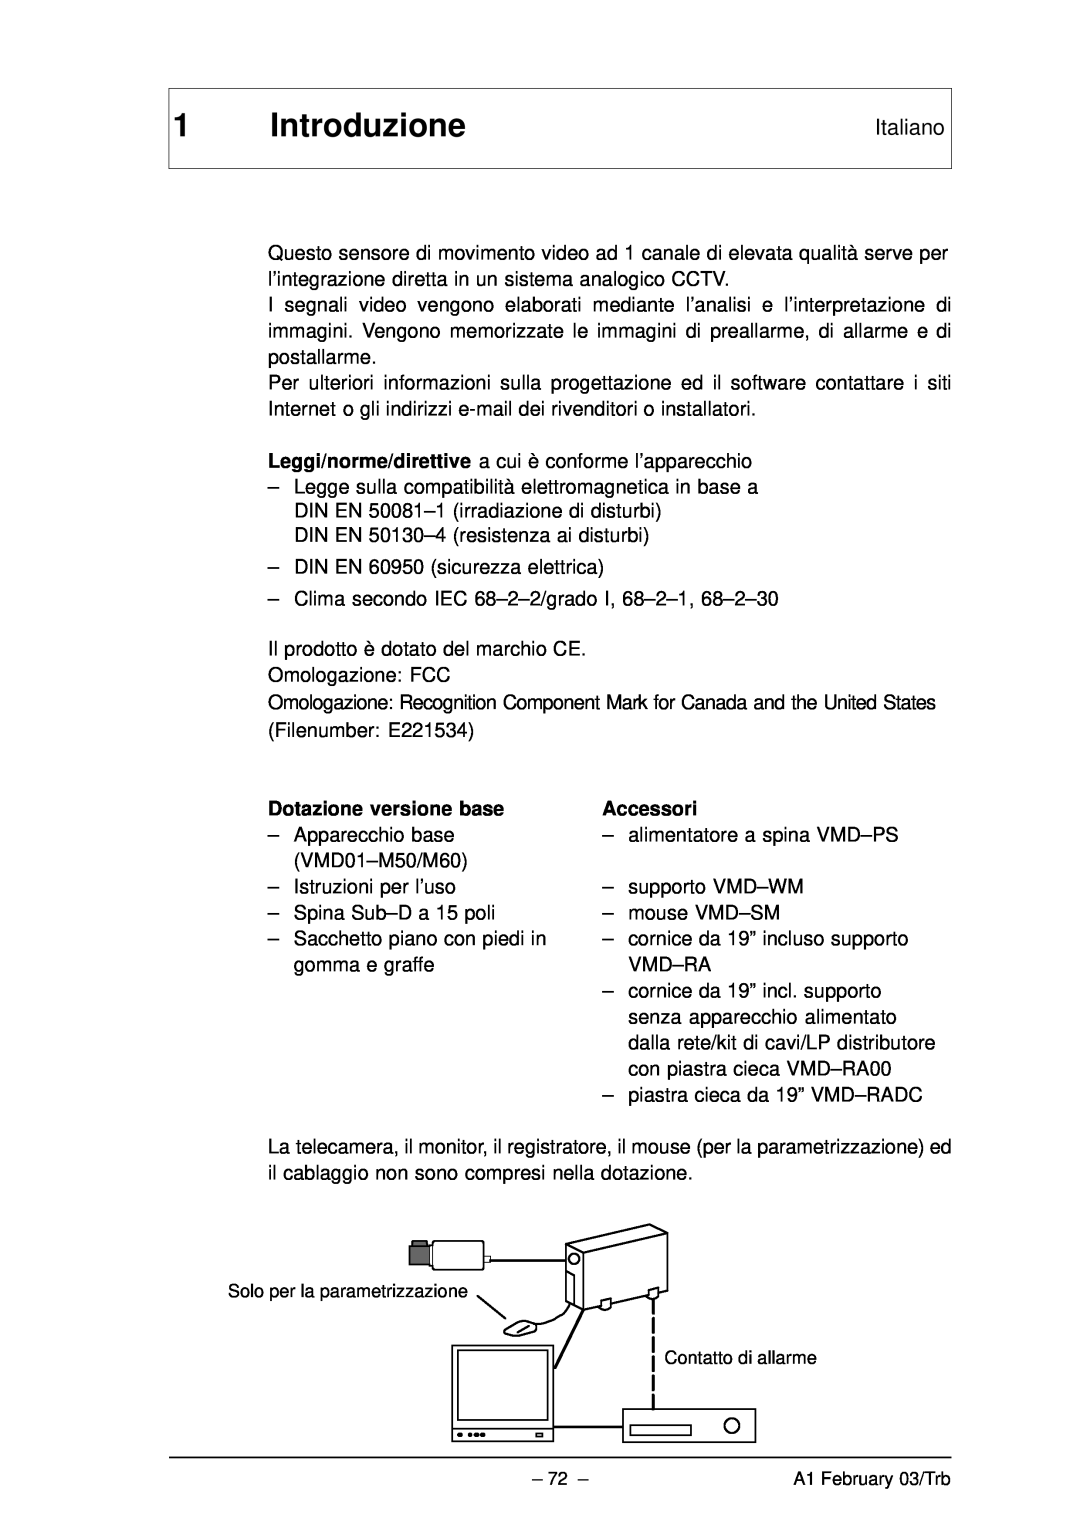 Bosch Appliances VMD01 M60 NTSC, VMD01 M50 PAL manual Introduzione, Italiano, Dotazione versione base, Accessori 